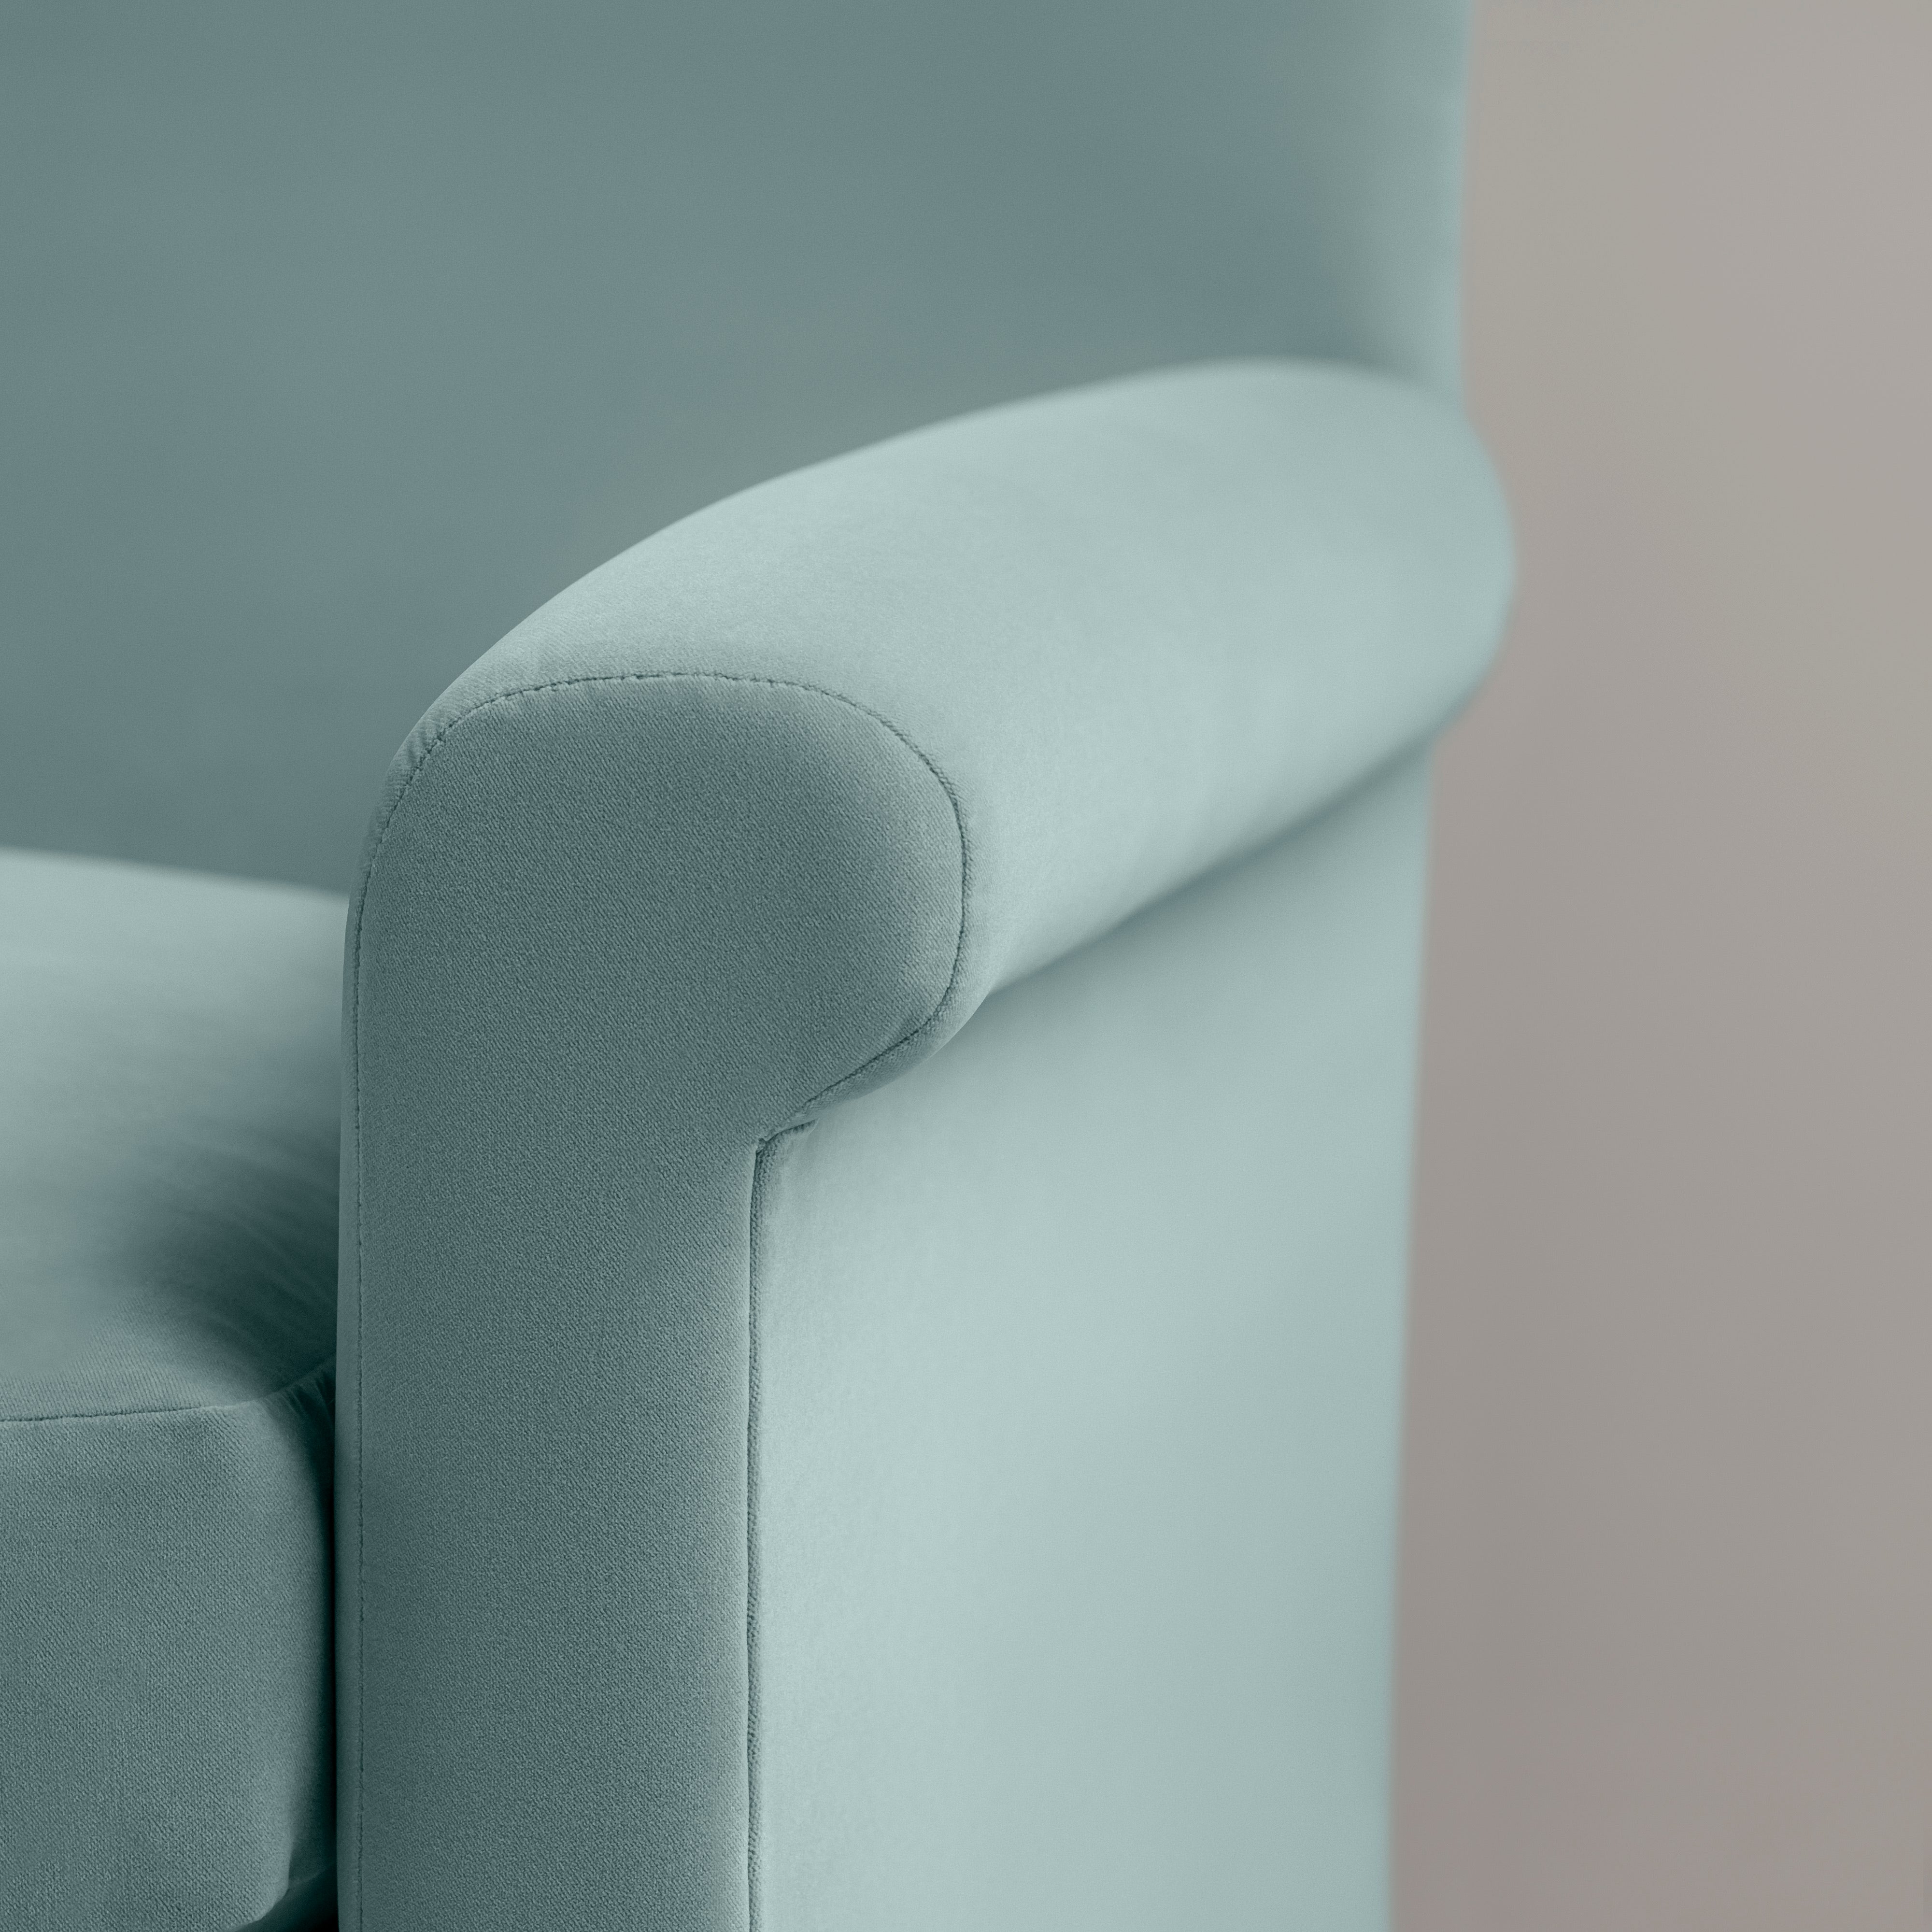  Idler 3 Seater Sofa in Intelligent Velvet Mineral 